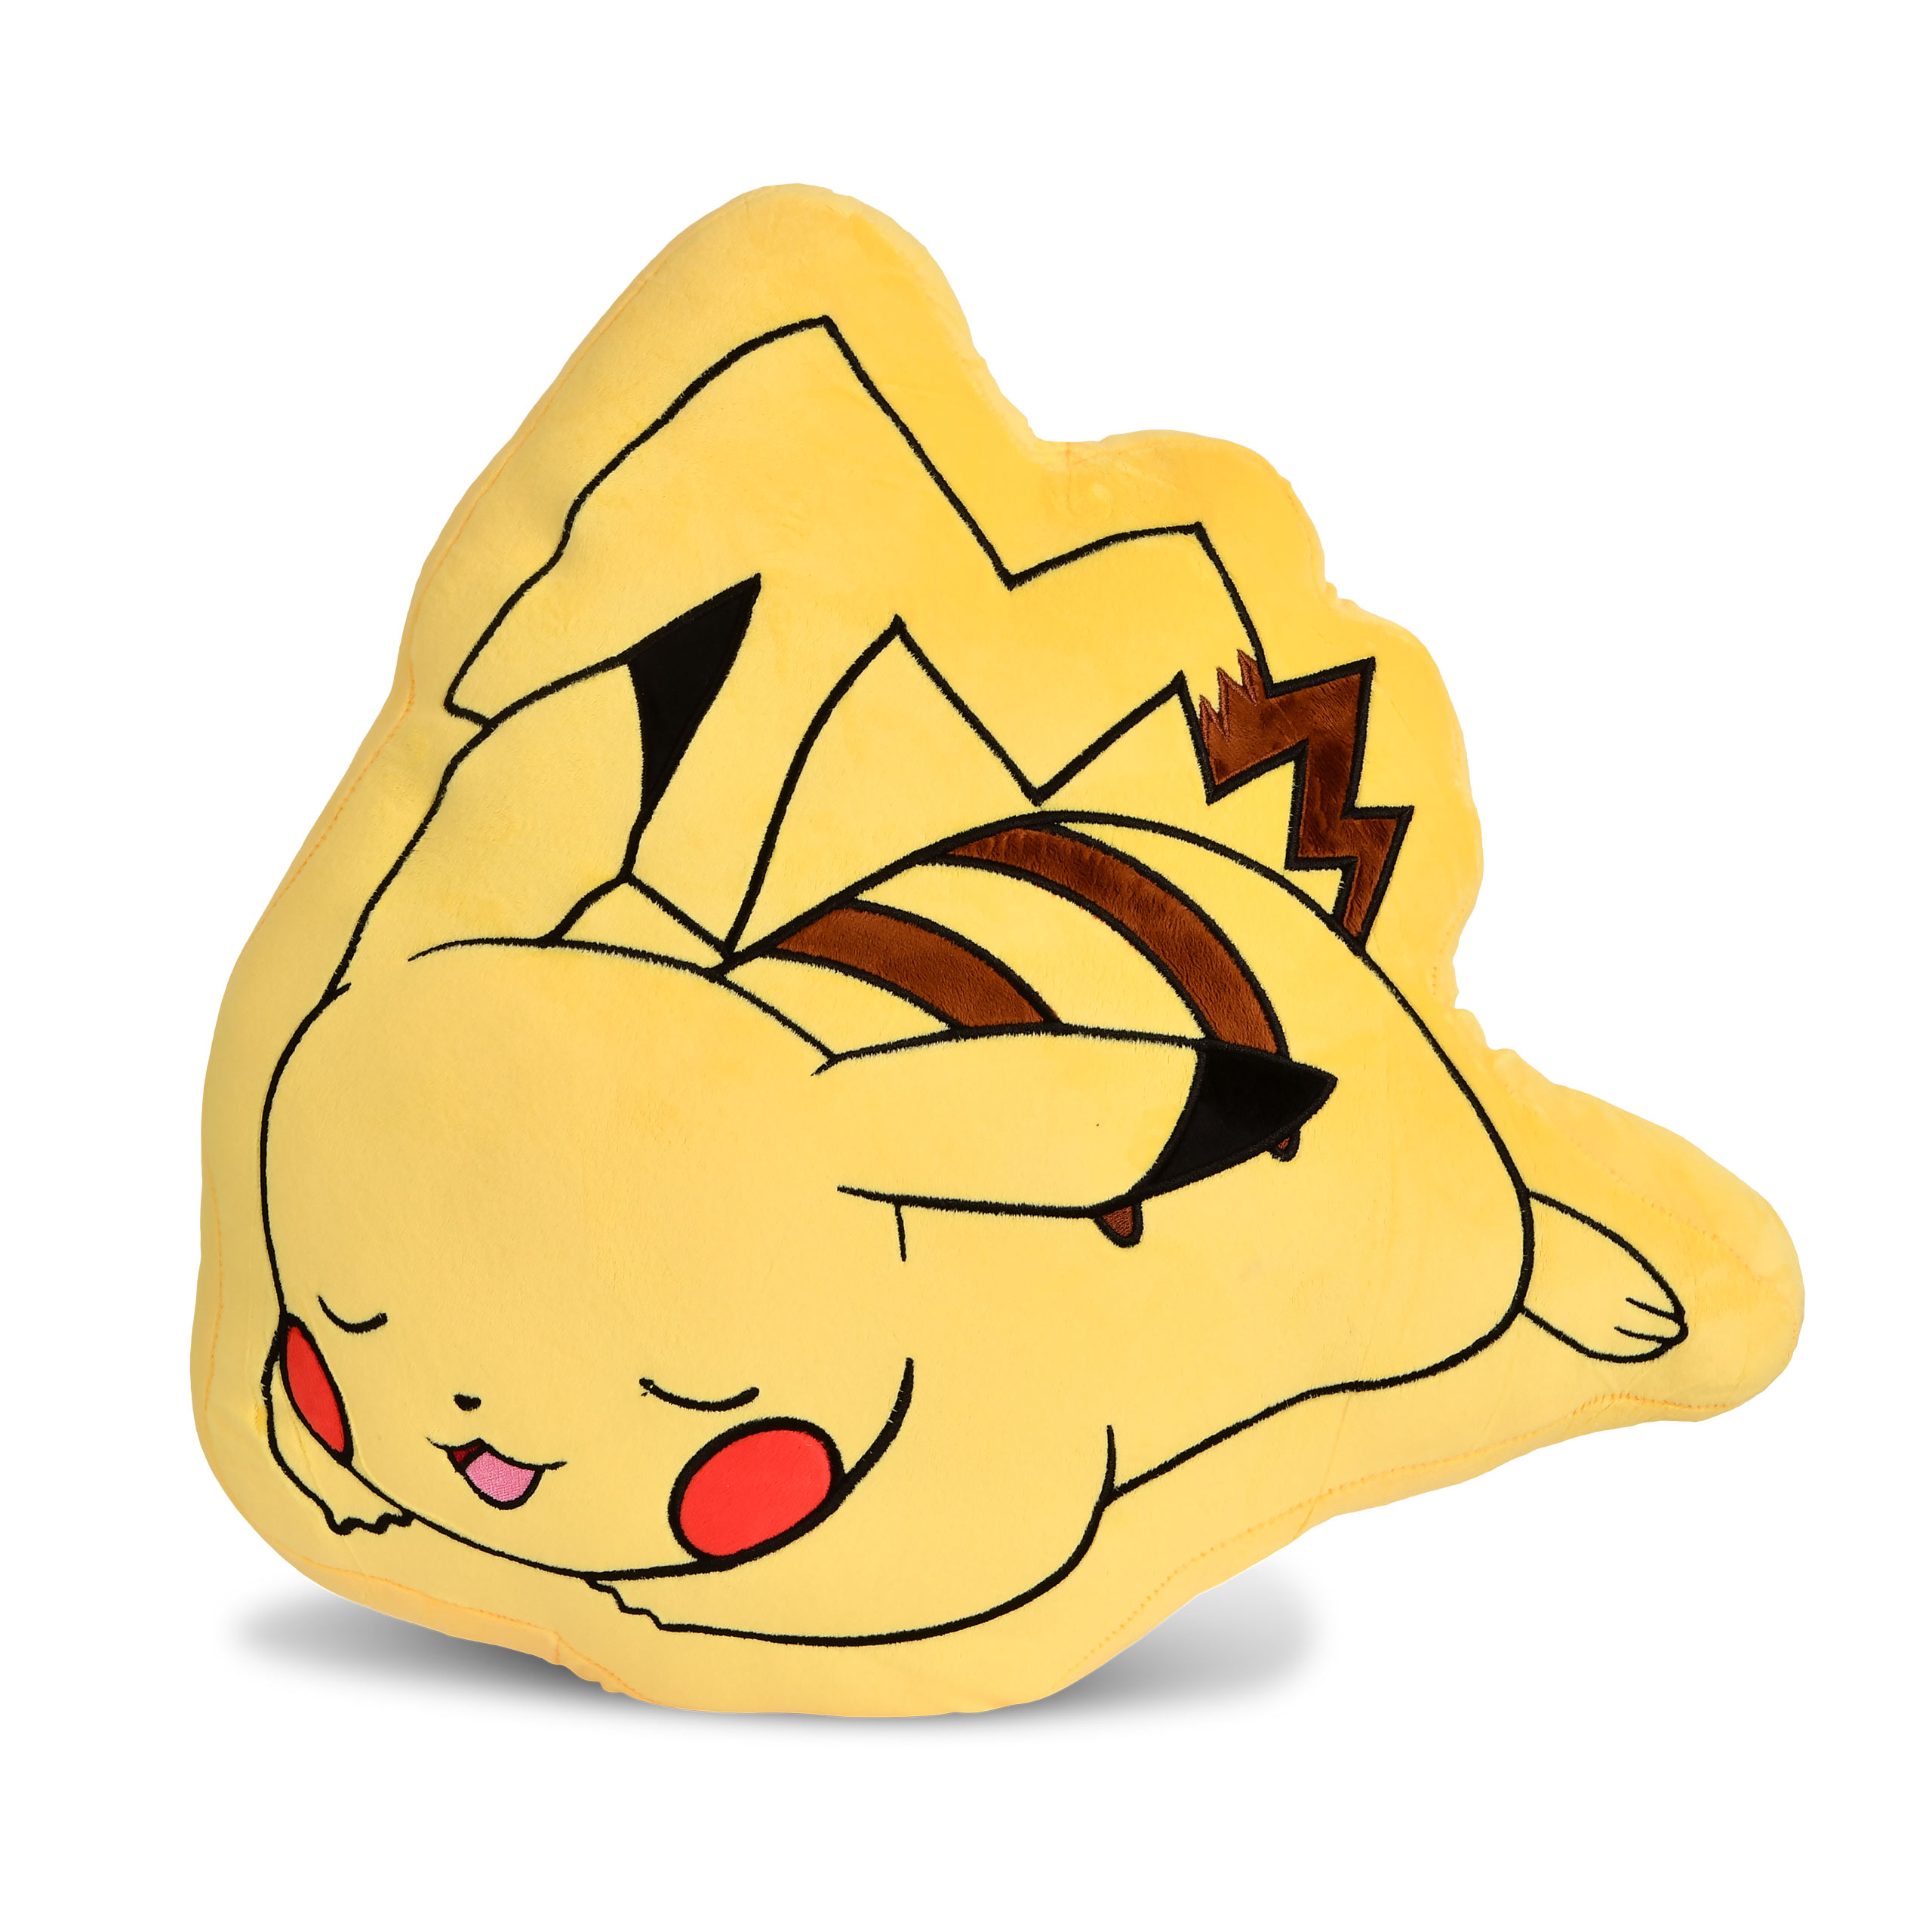 Schlafendes Pikachu Plüschkissen - Pokemon